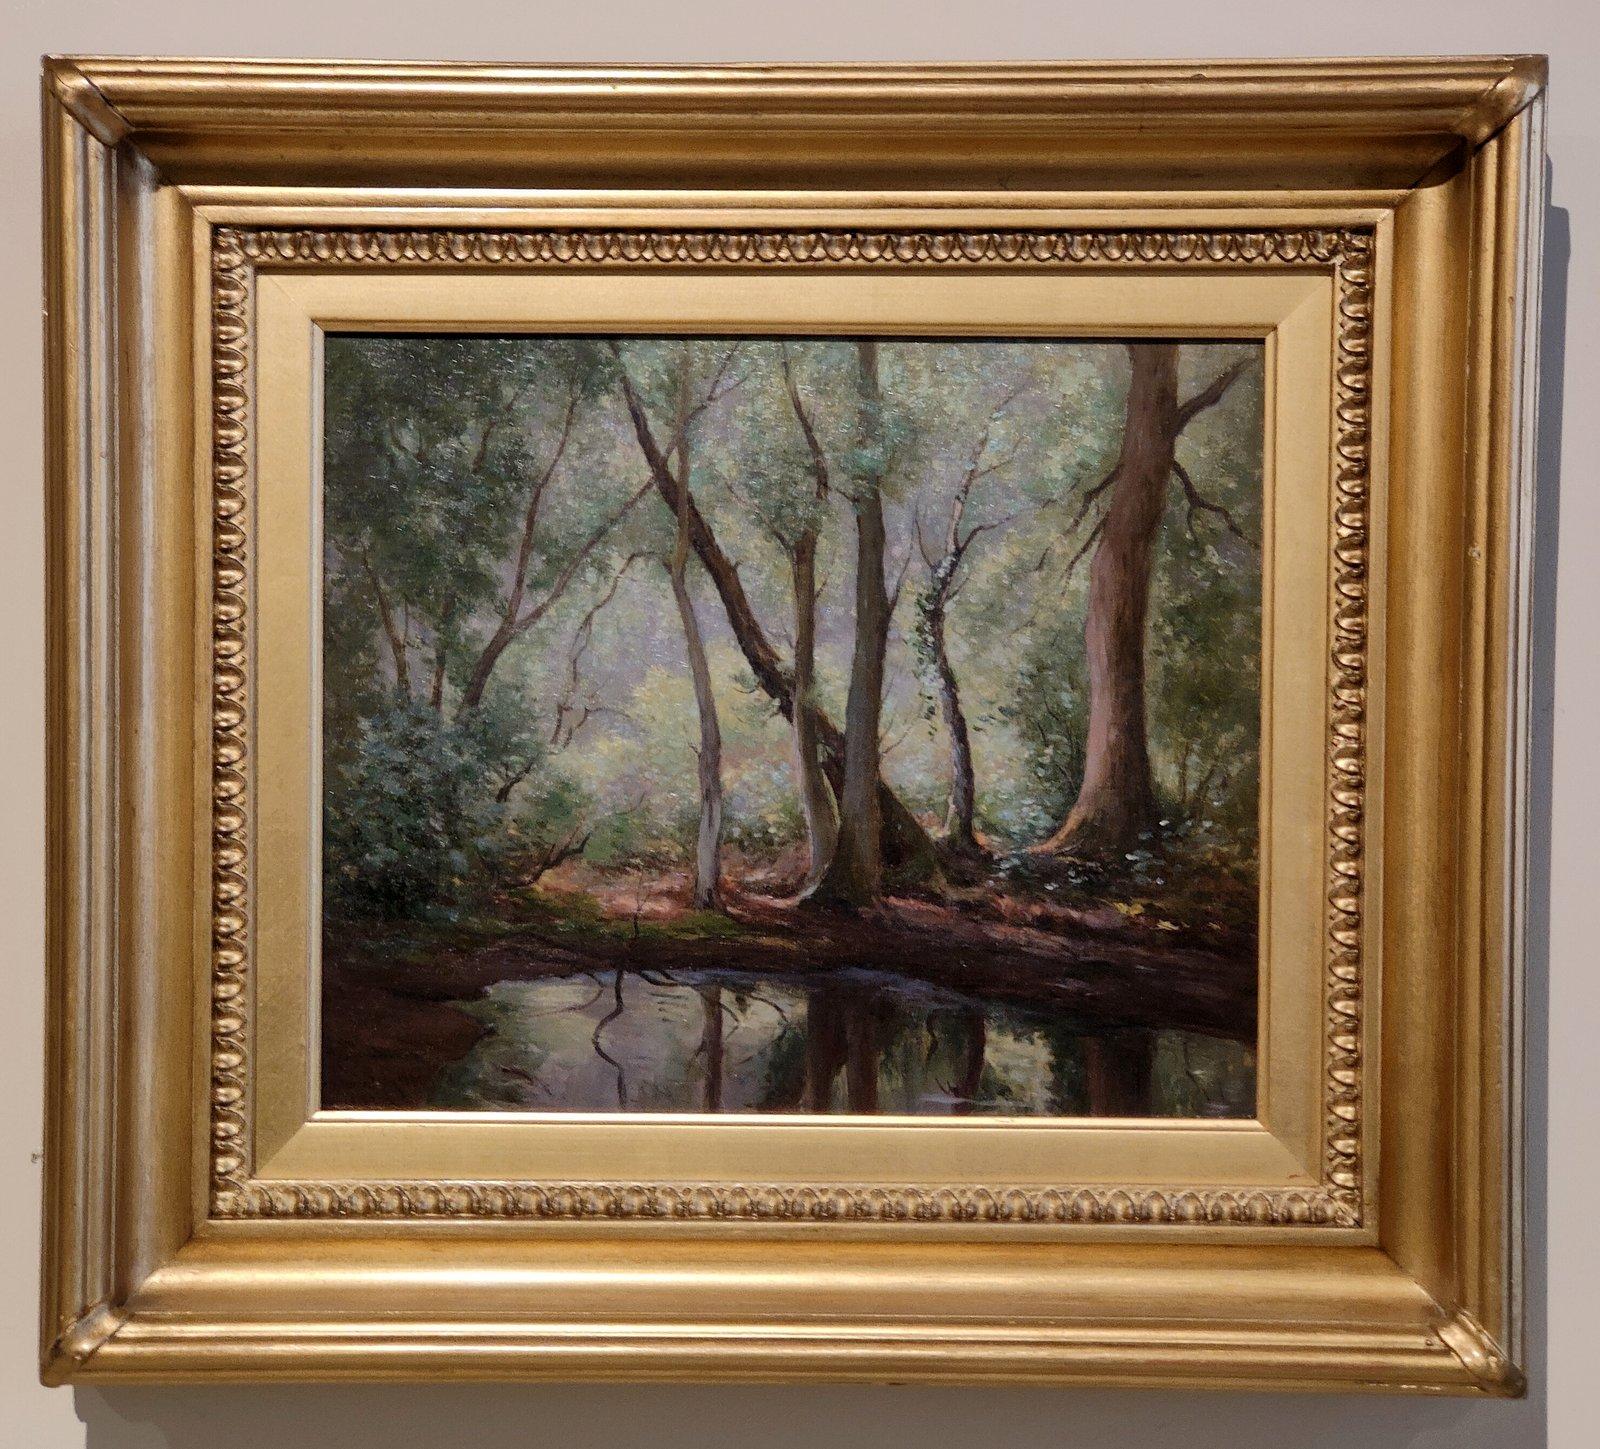 Ölgemälde von William B Rowe "The Woodland Pool" 1854 -1933 Provinzmaler einer ländlichen englischen Landschaft im Maßstab. Öl auf Leinwand. Signiert und datiert 1912. Schöner Originalrahmen.

Abmessungen ungerahmt:
Höhe 10" x Breite 12"
Abmessungen